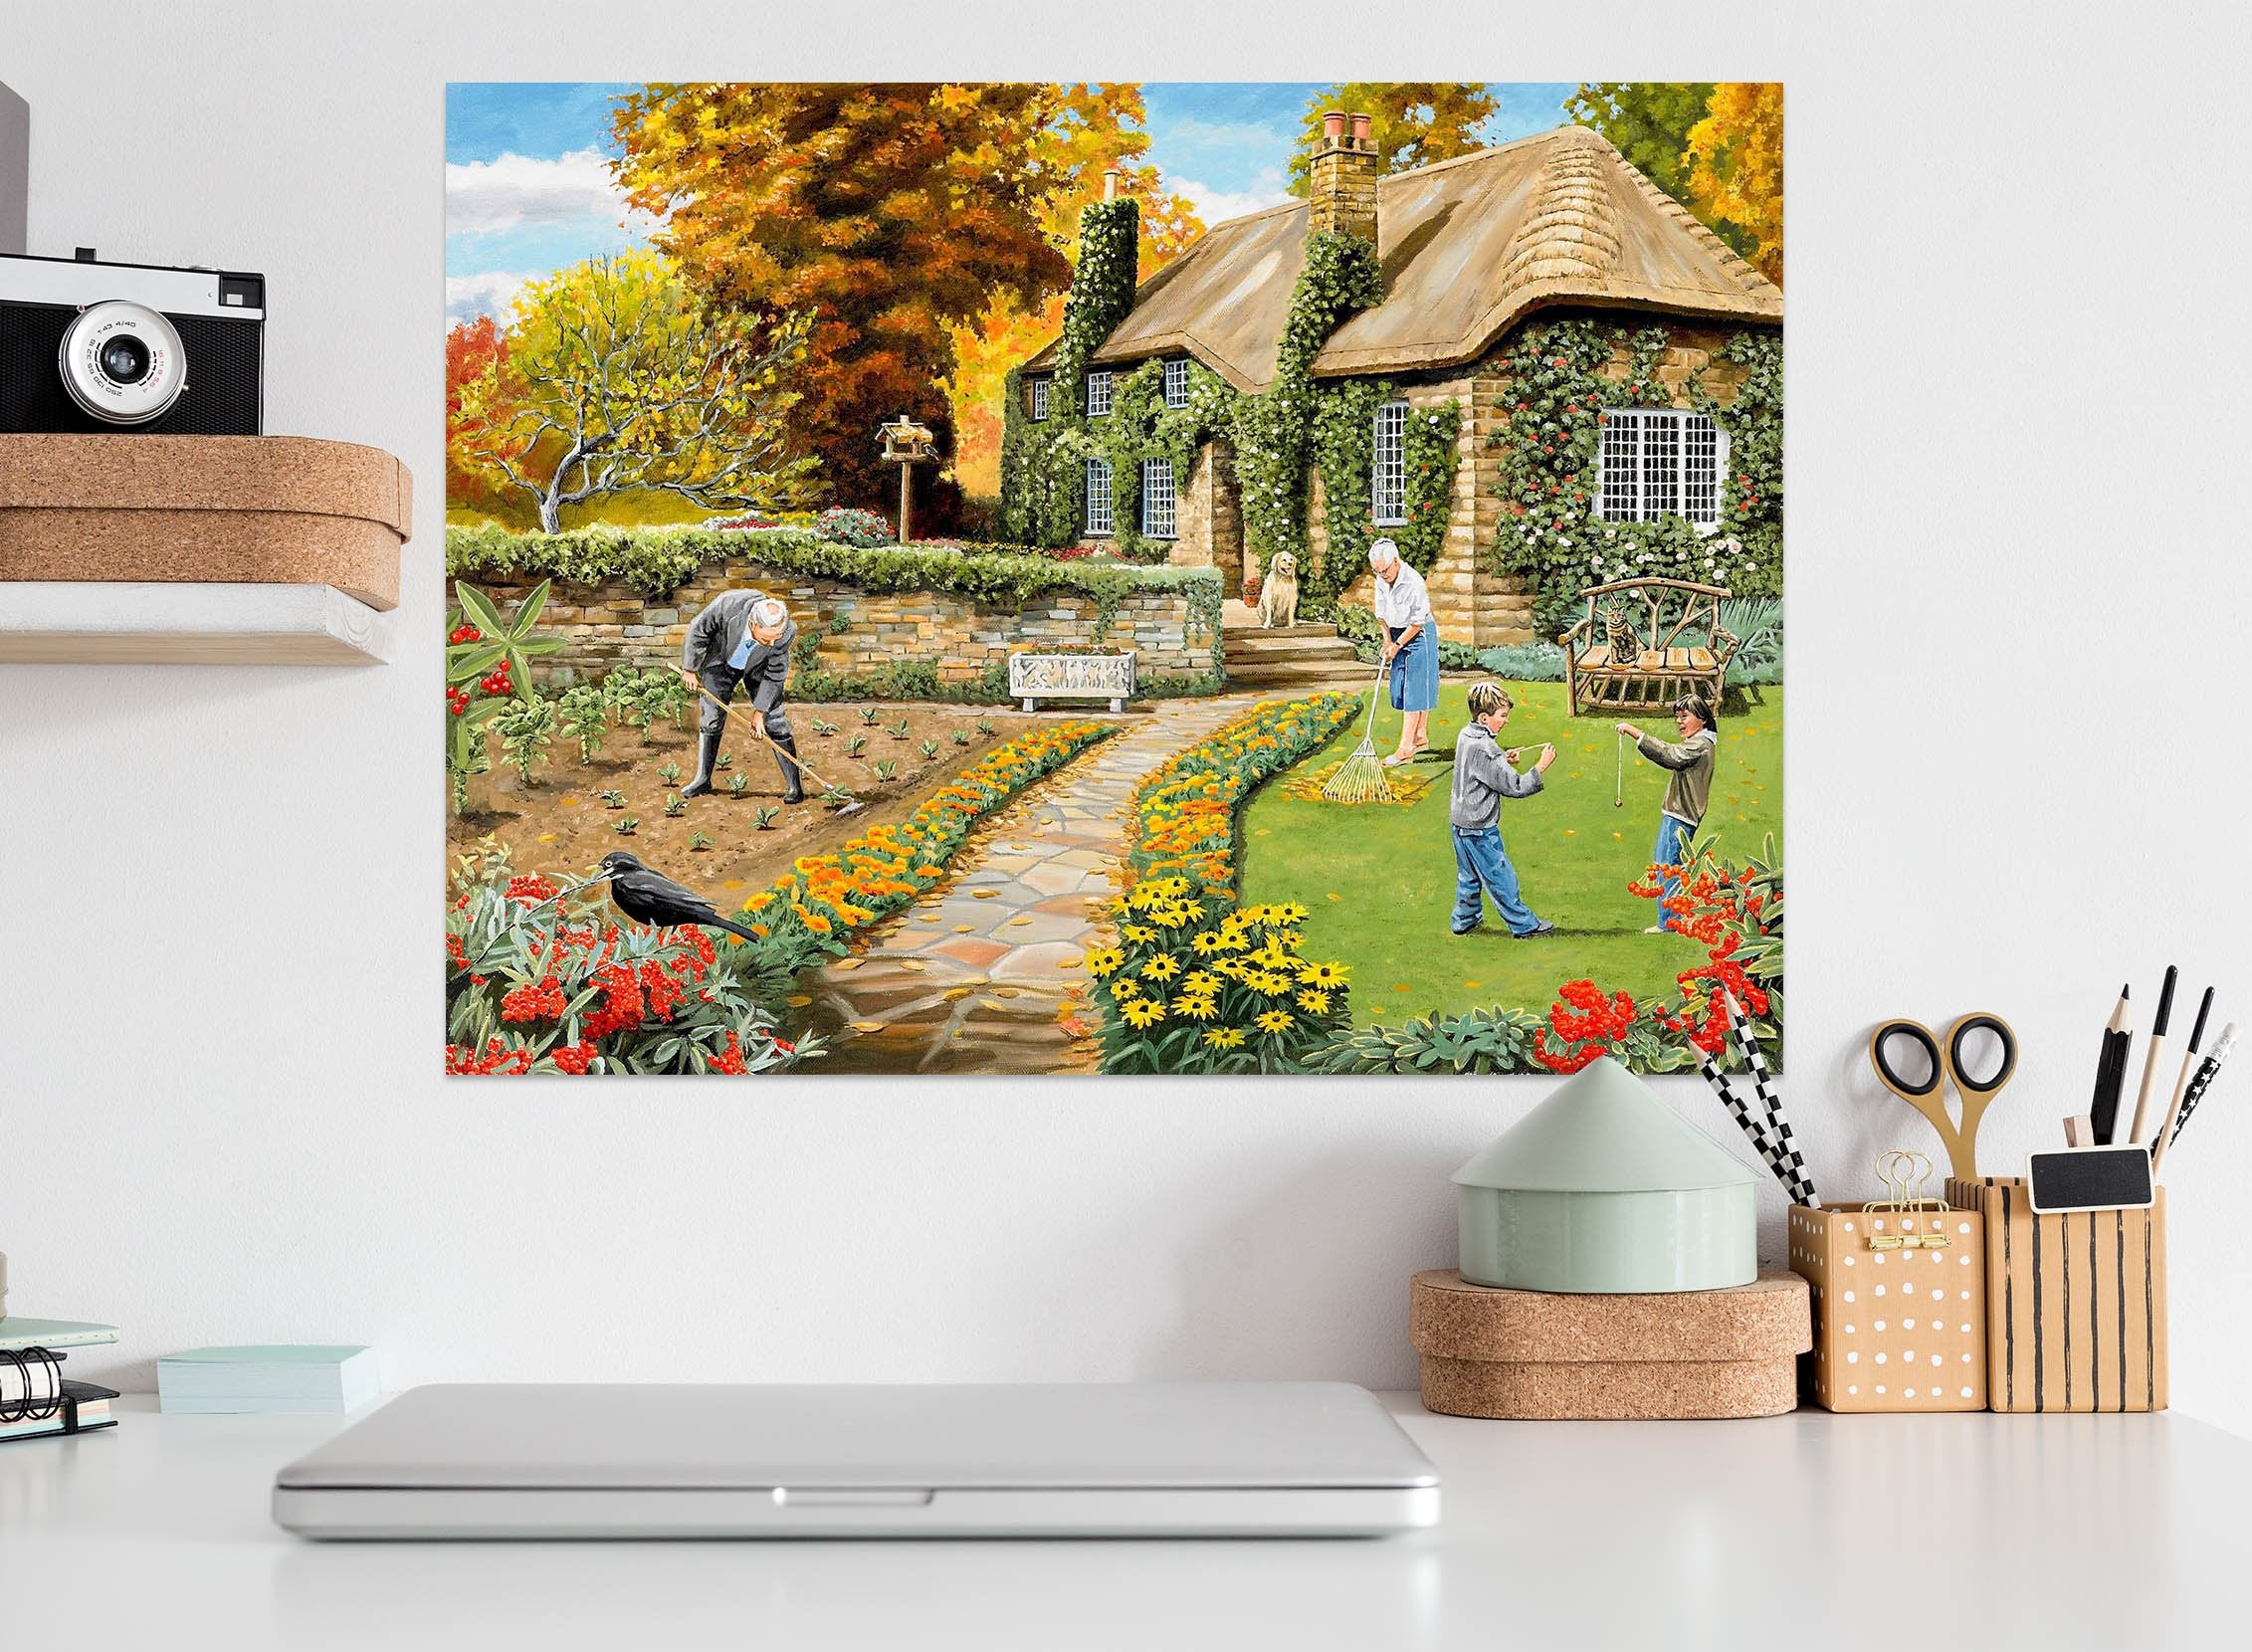 3D Autumn Garden 015 Trevor Mitchell Wall Sticker Wallpaper AJ Wallpaper 2 